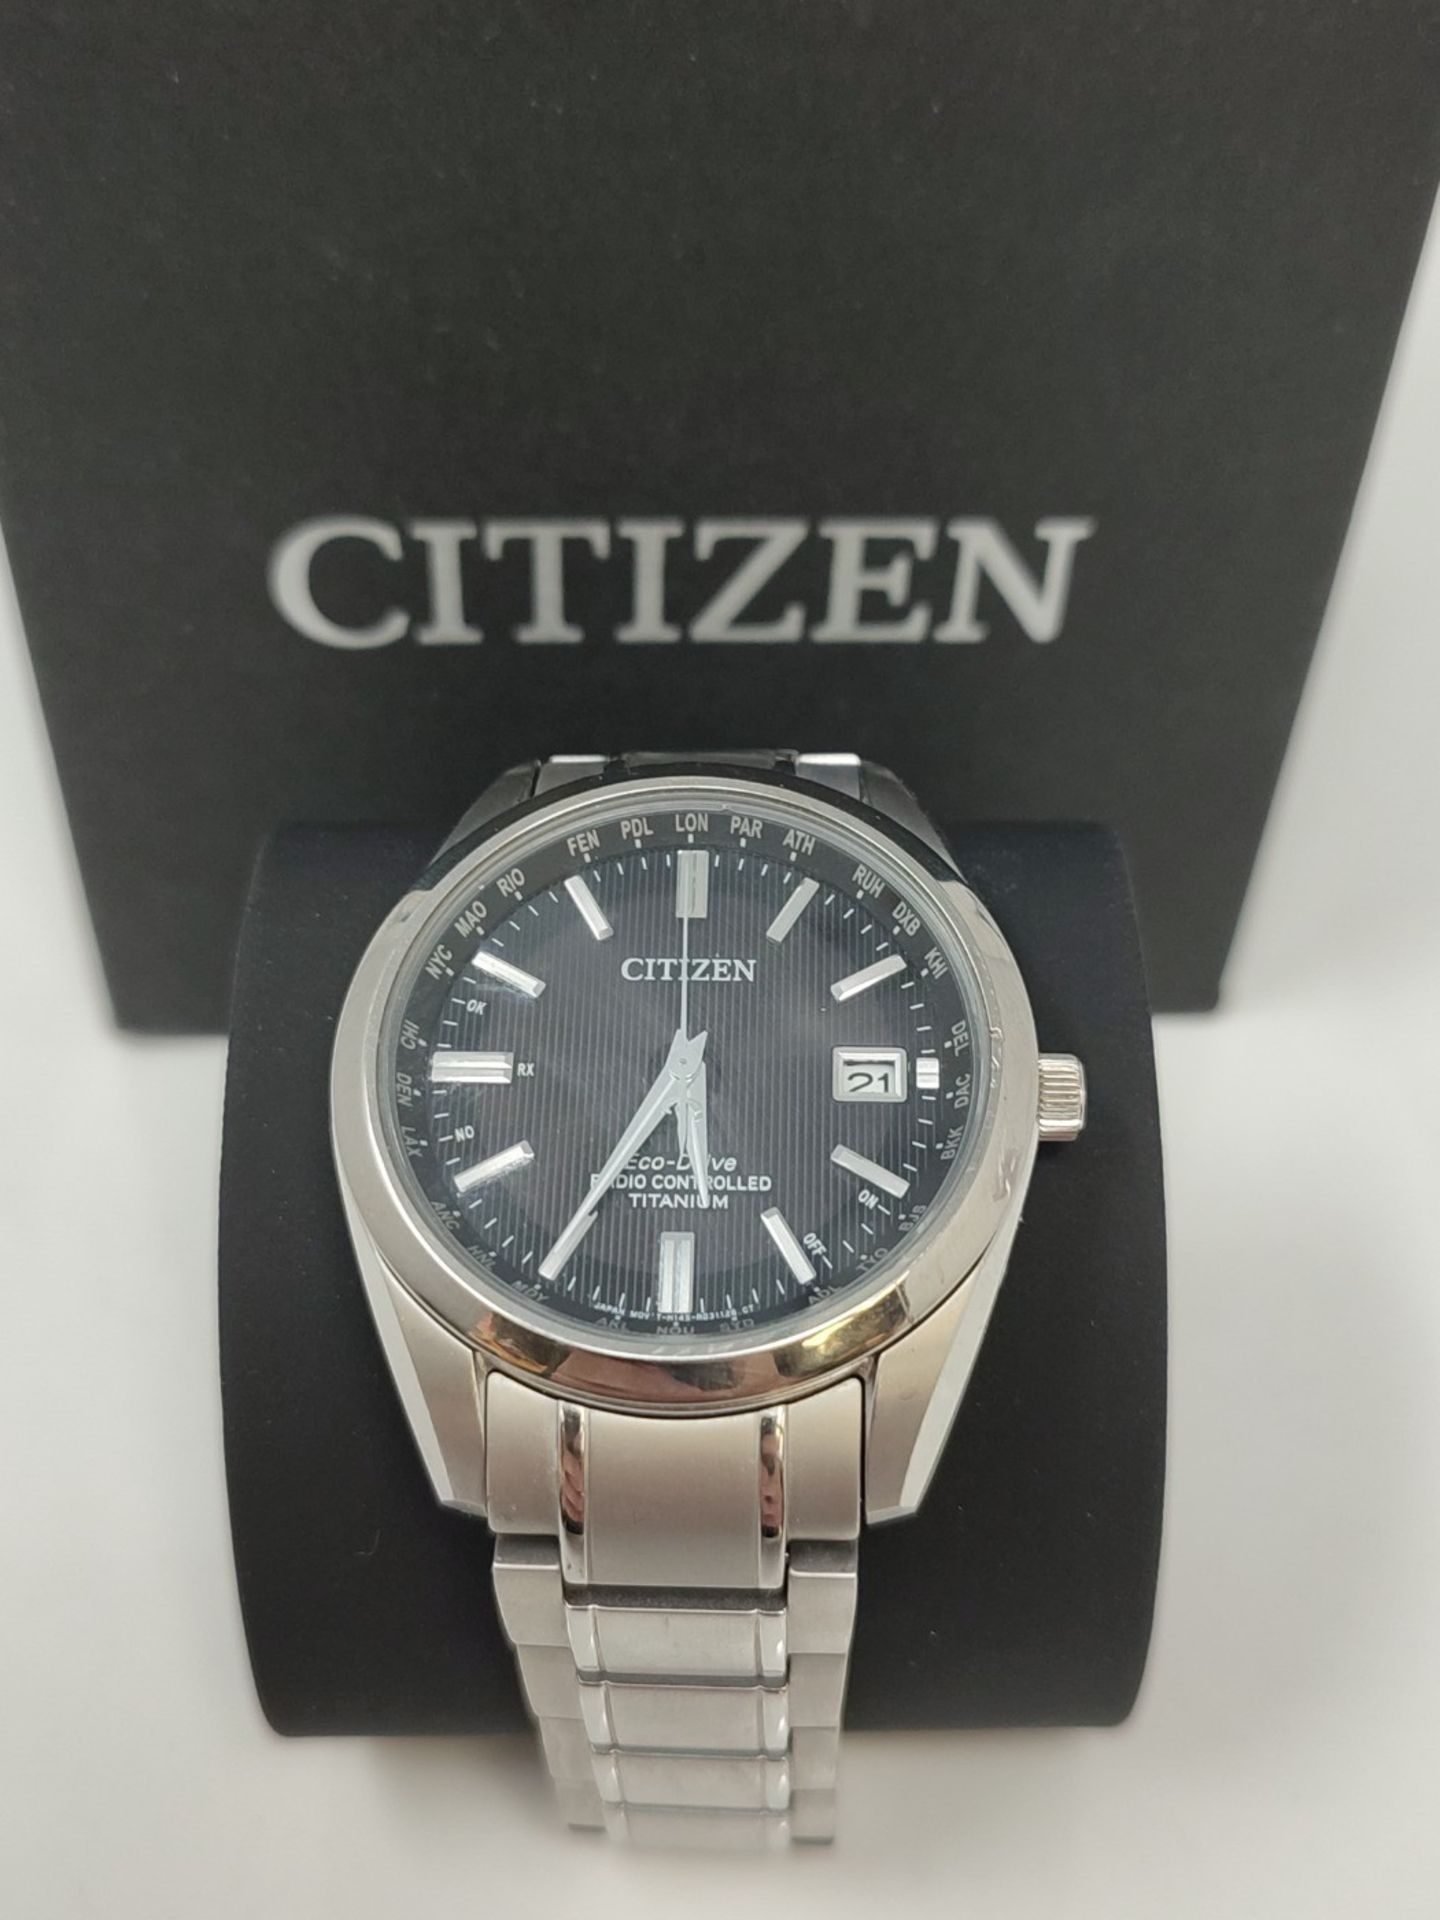 RRP £449.00 Citizen Men's Analog Solar Watch with Titanium Bracelet CB0260-81E - Image 2 of 3